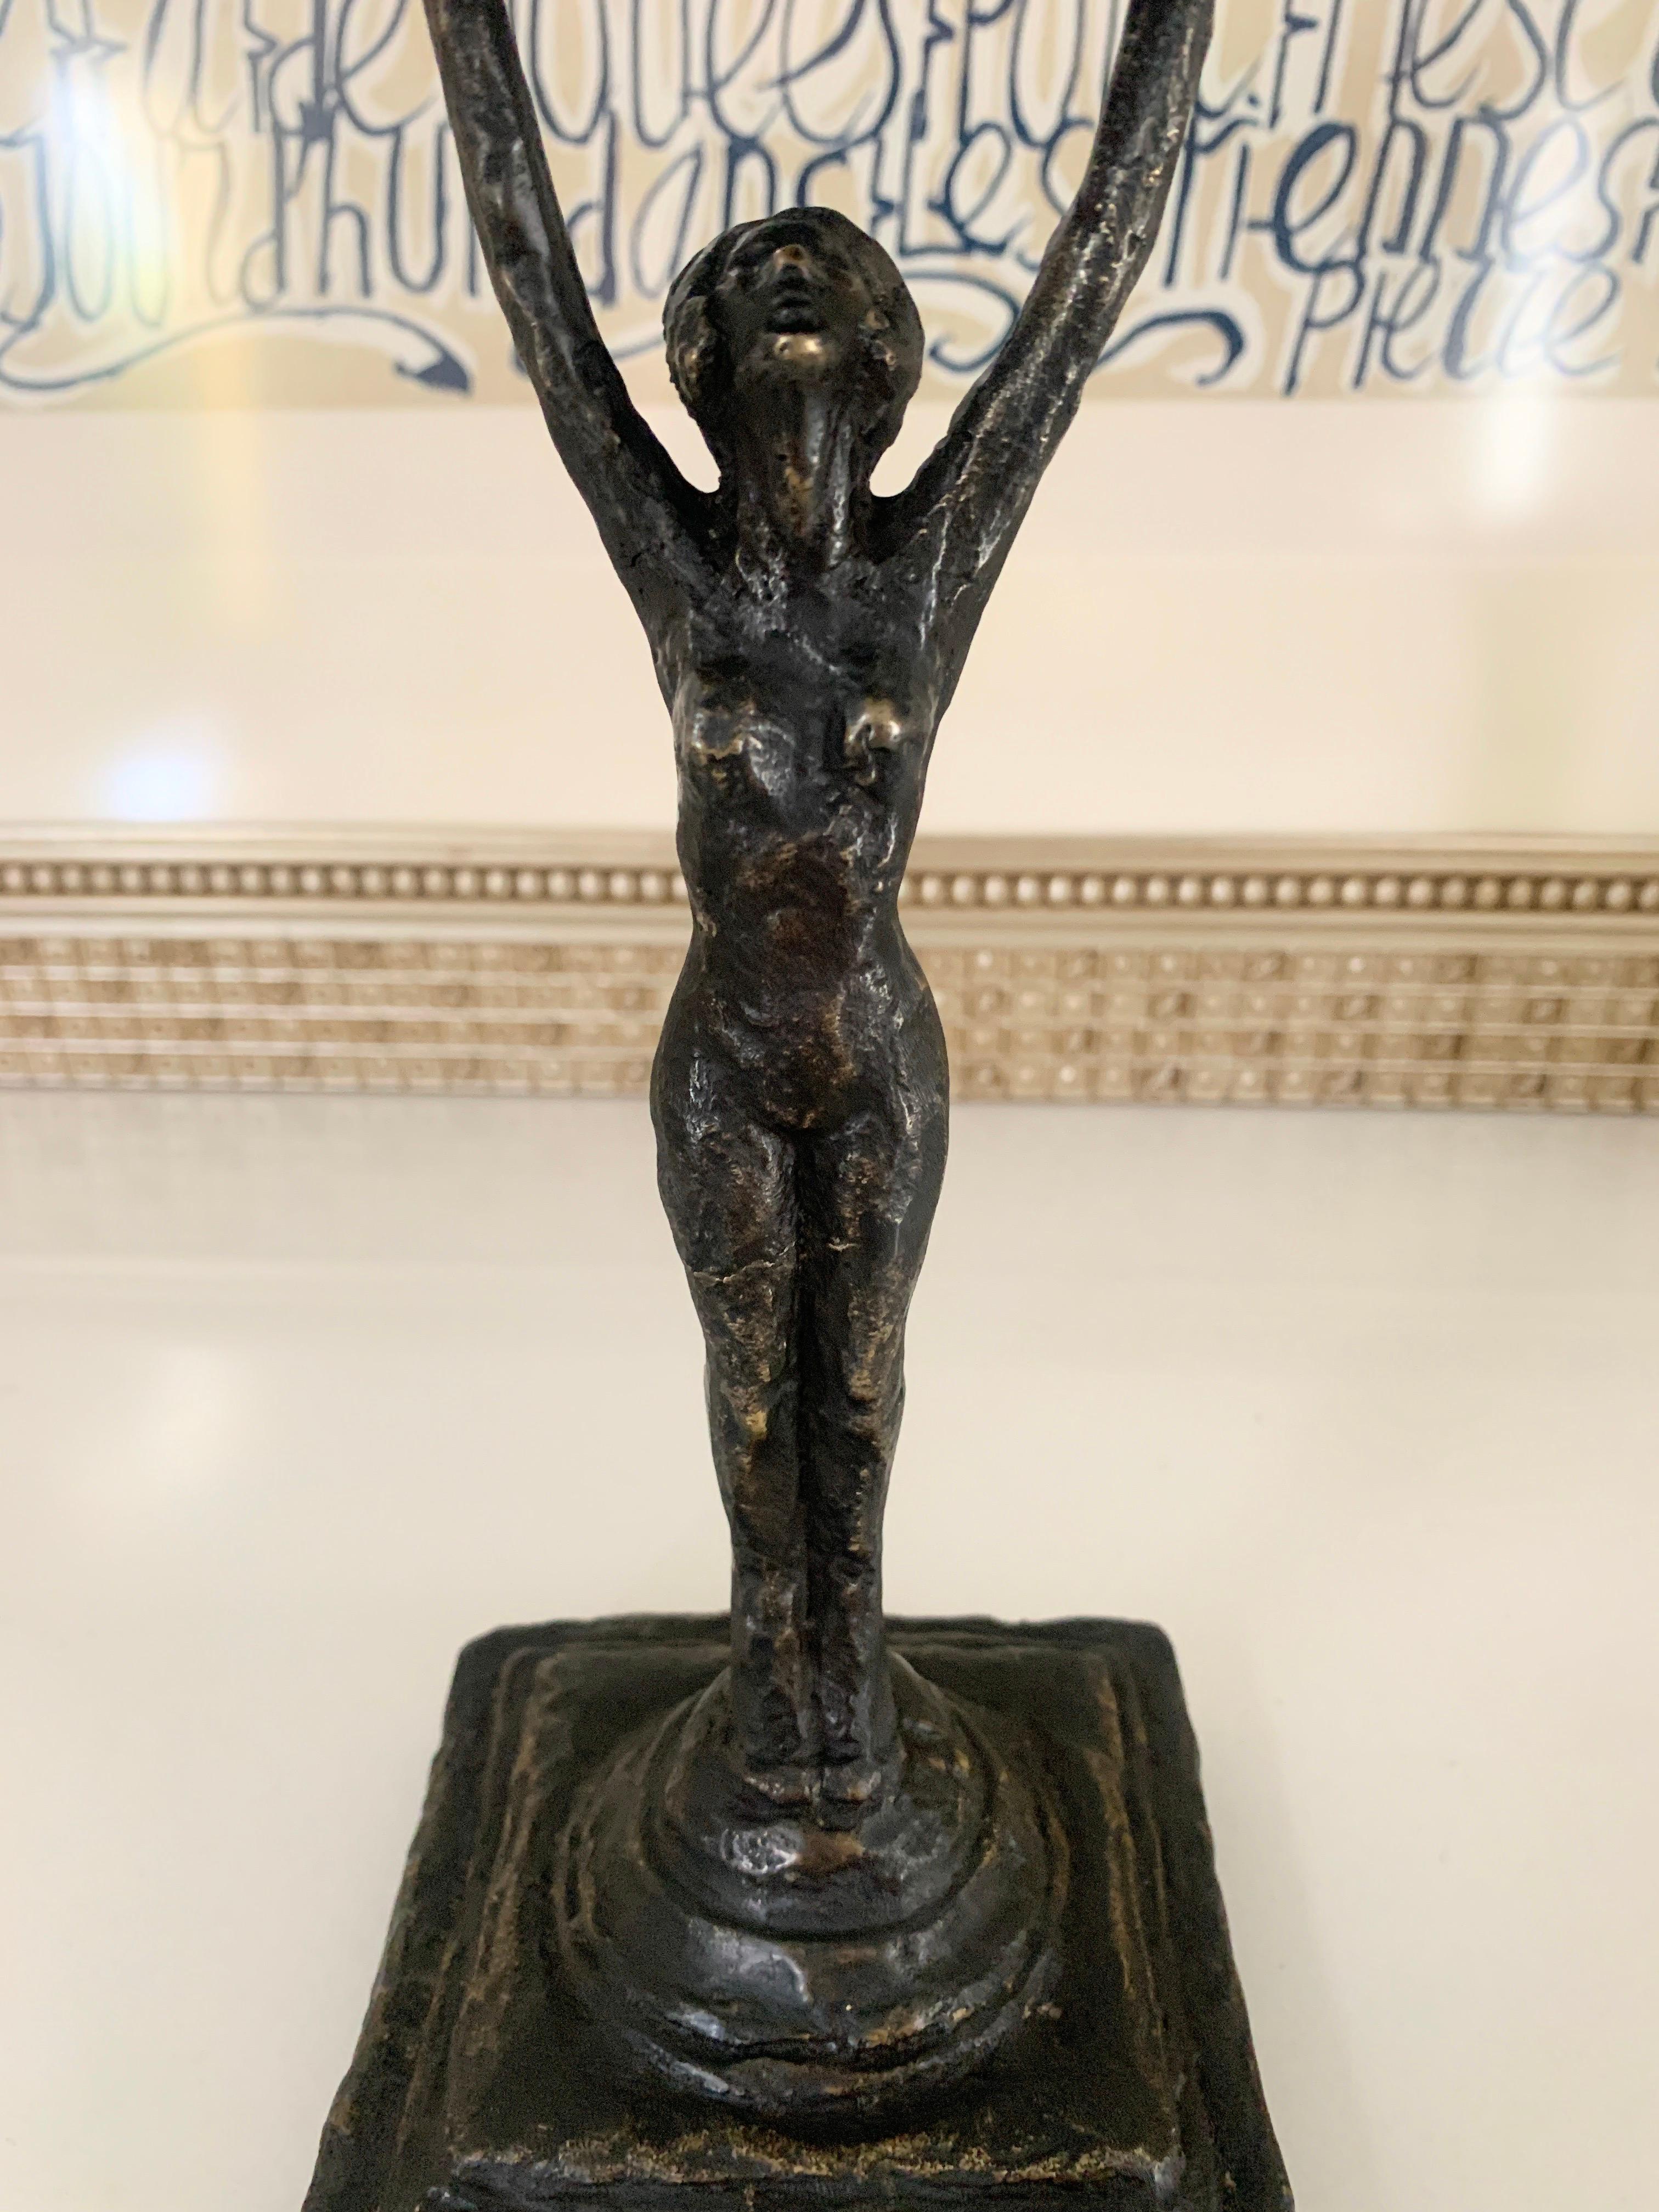 Eine wunderschöne geschnitzte Bronzefigur, die eine Tasse über dem Kopf hält - eine eigenständige Skulptur für jeden Raum. Seien Sie kreativ und verwenden Sie das Teil auf einem Schreibtisch oder einem Tisch, auf dem Sie alles von Appetizern bis zu